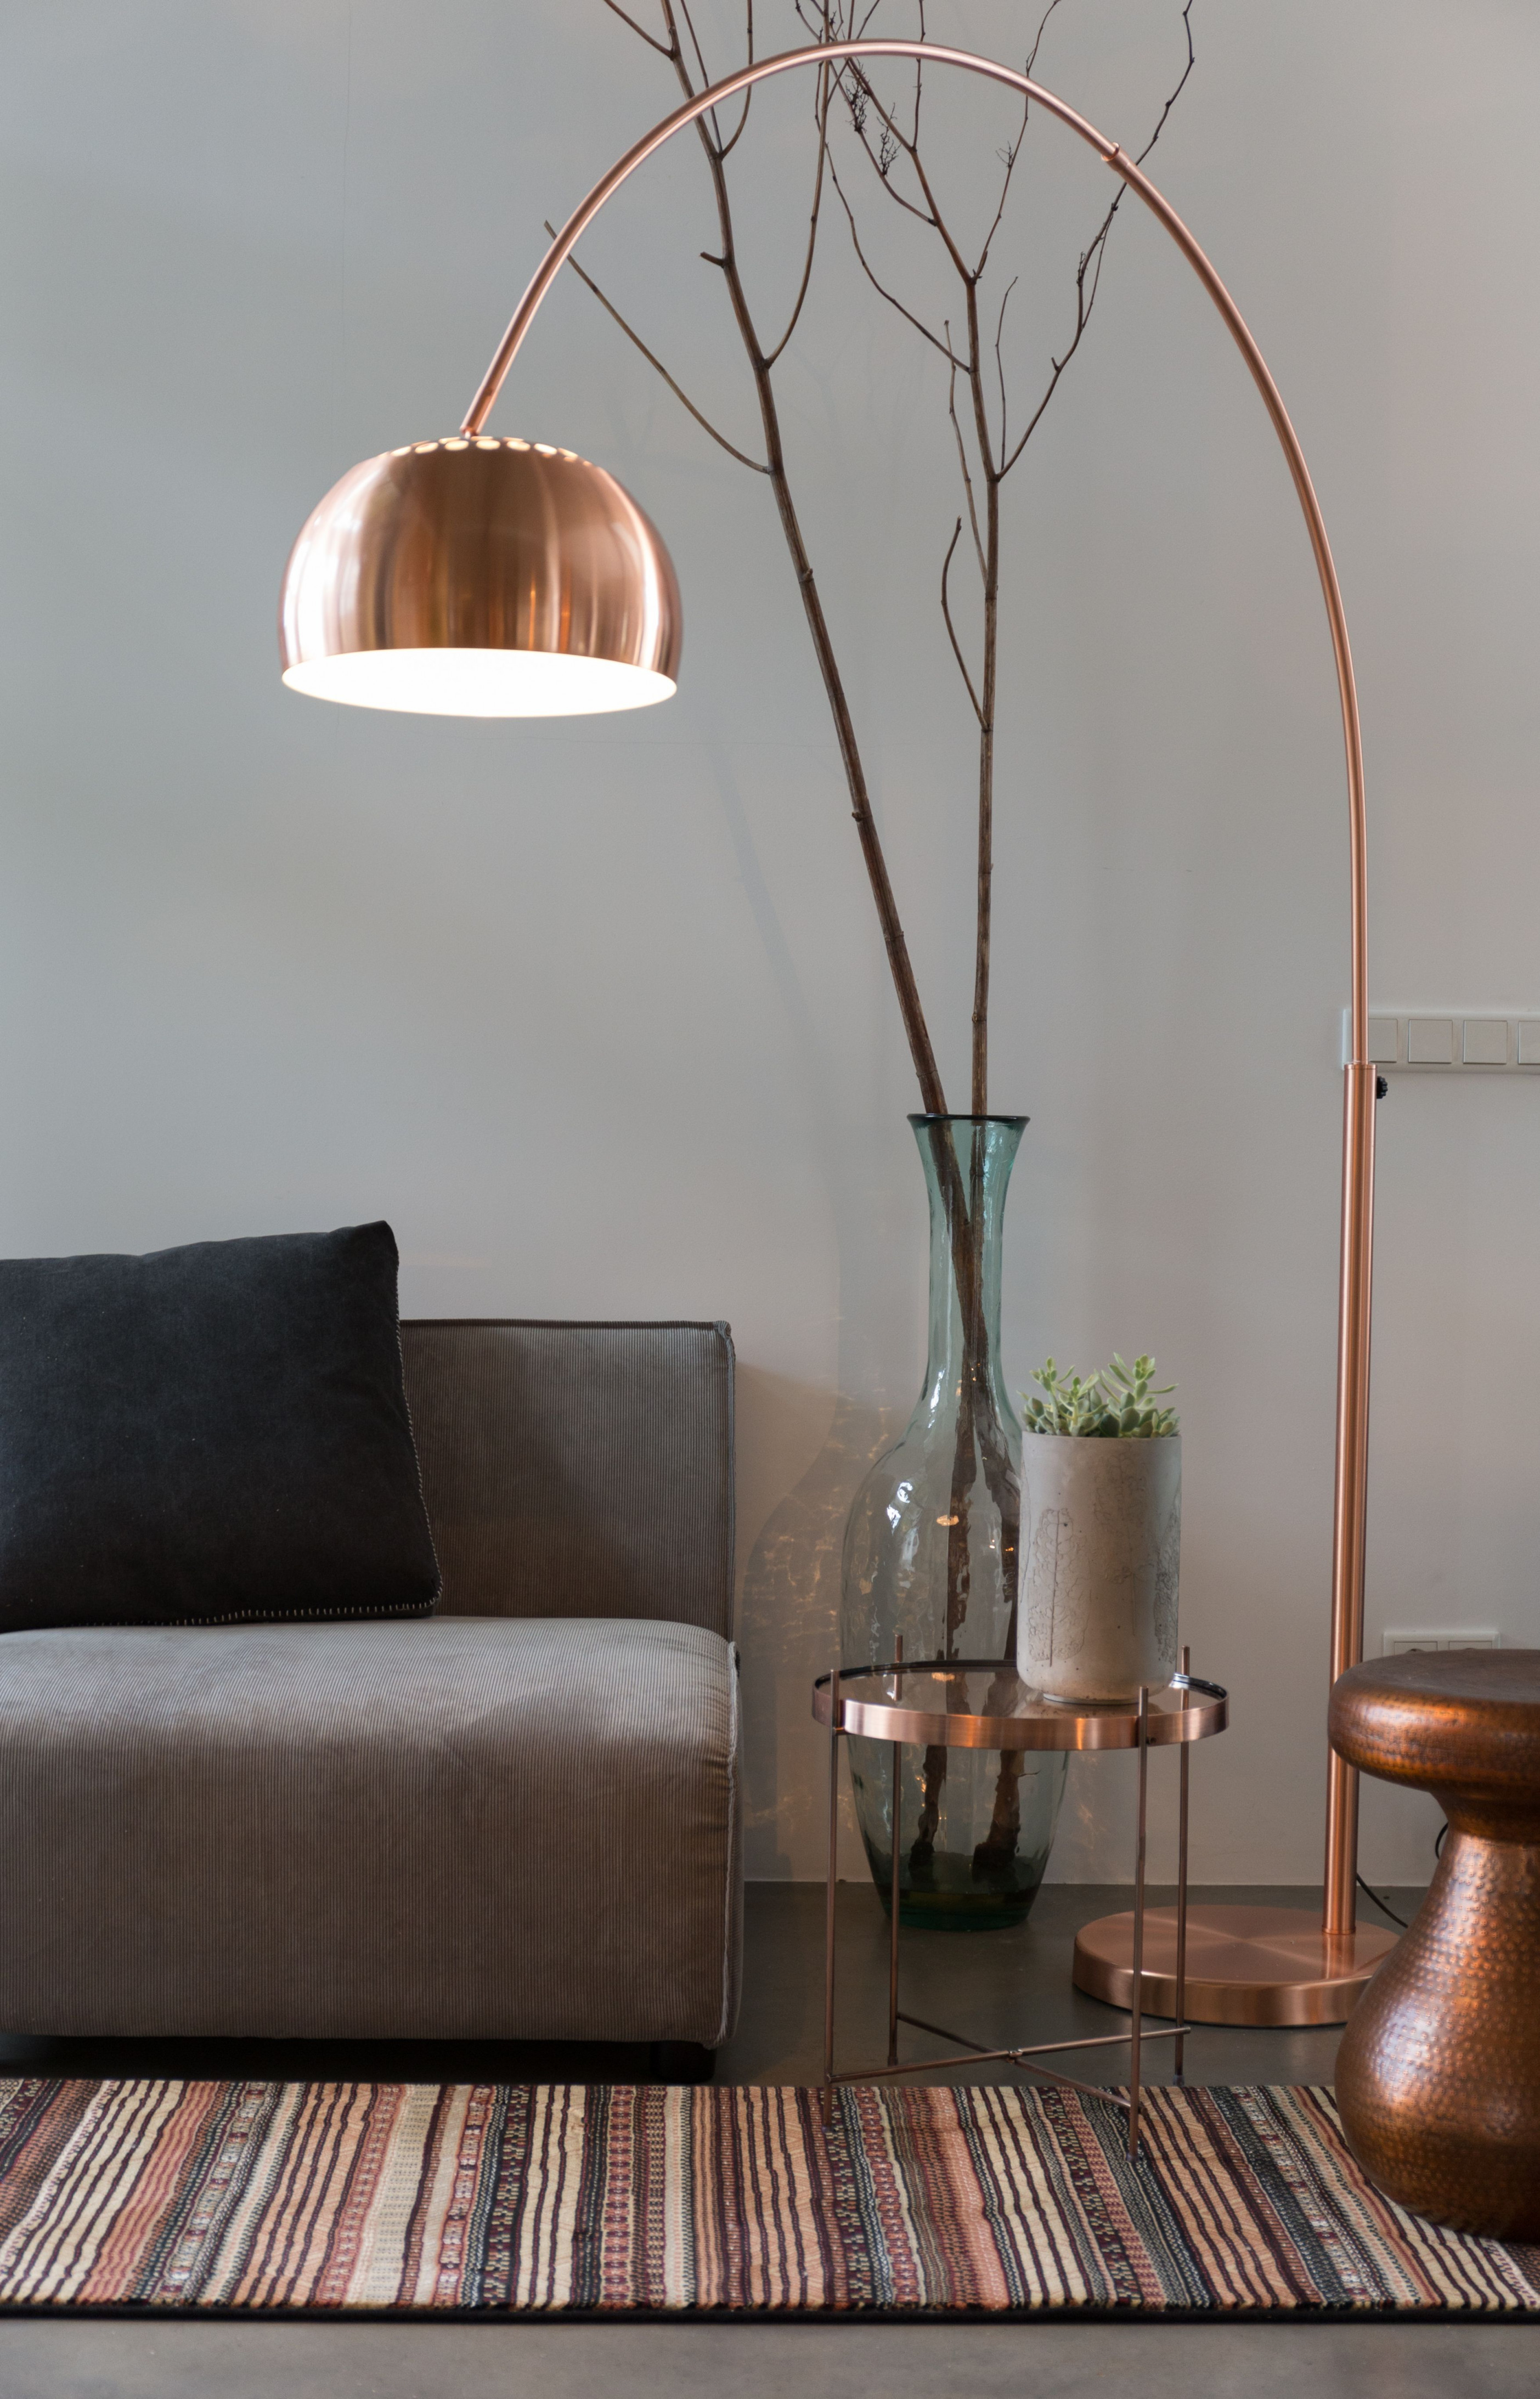 Stehlampe Kupfer  Metal Bow Copper  Floor Lamps Living von Wohnzimmer Lampe Kupfer Photo